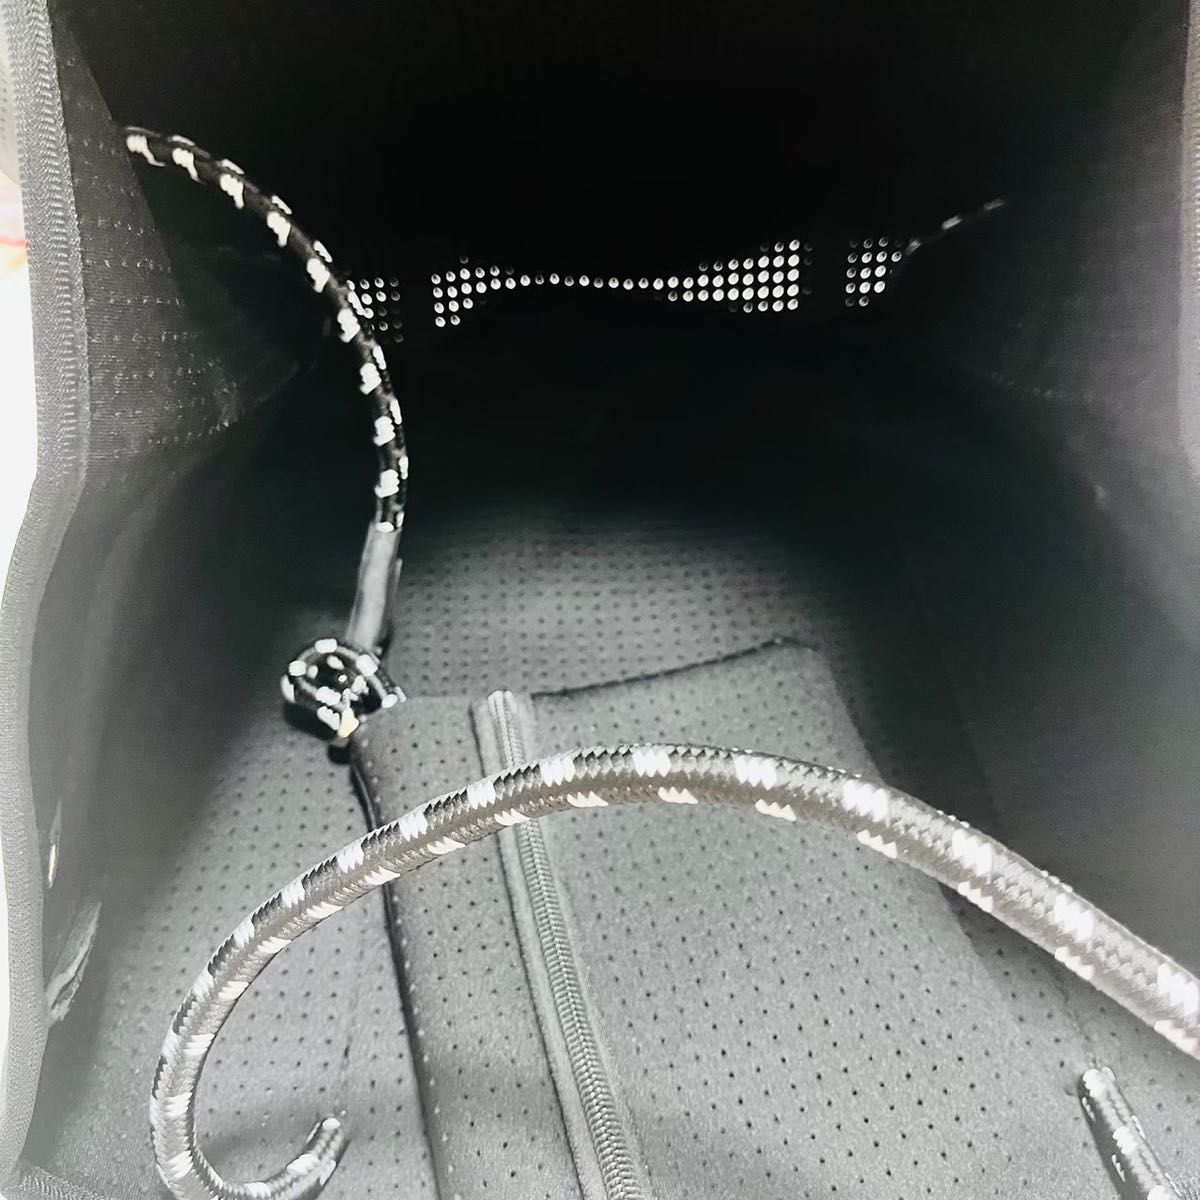 ネオプレーン トートバッグ 通勤 旅行 黒マザーズバッグ ポーチ付き 大容量 黒 軽量 保育園 ブラック  プール 海 ジム